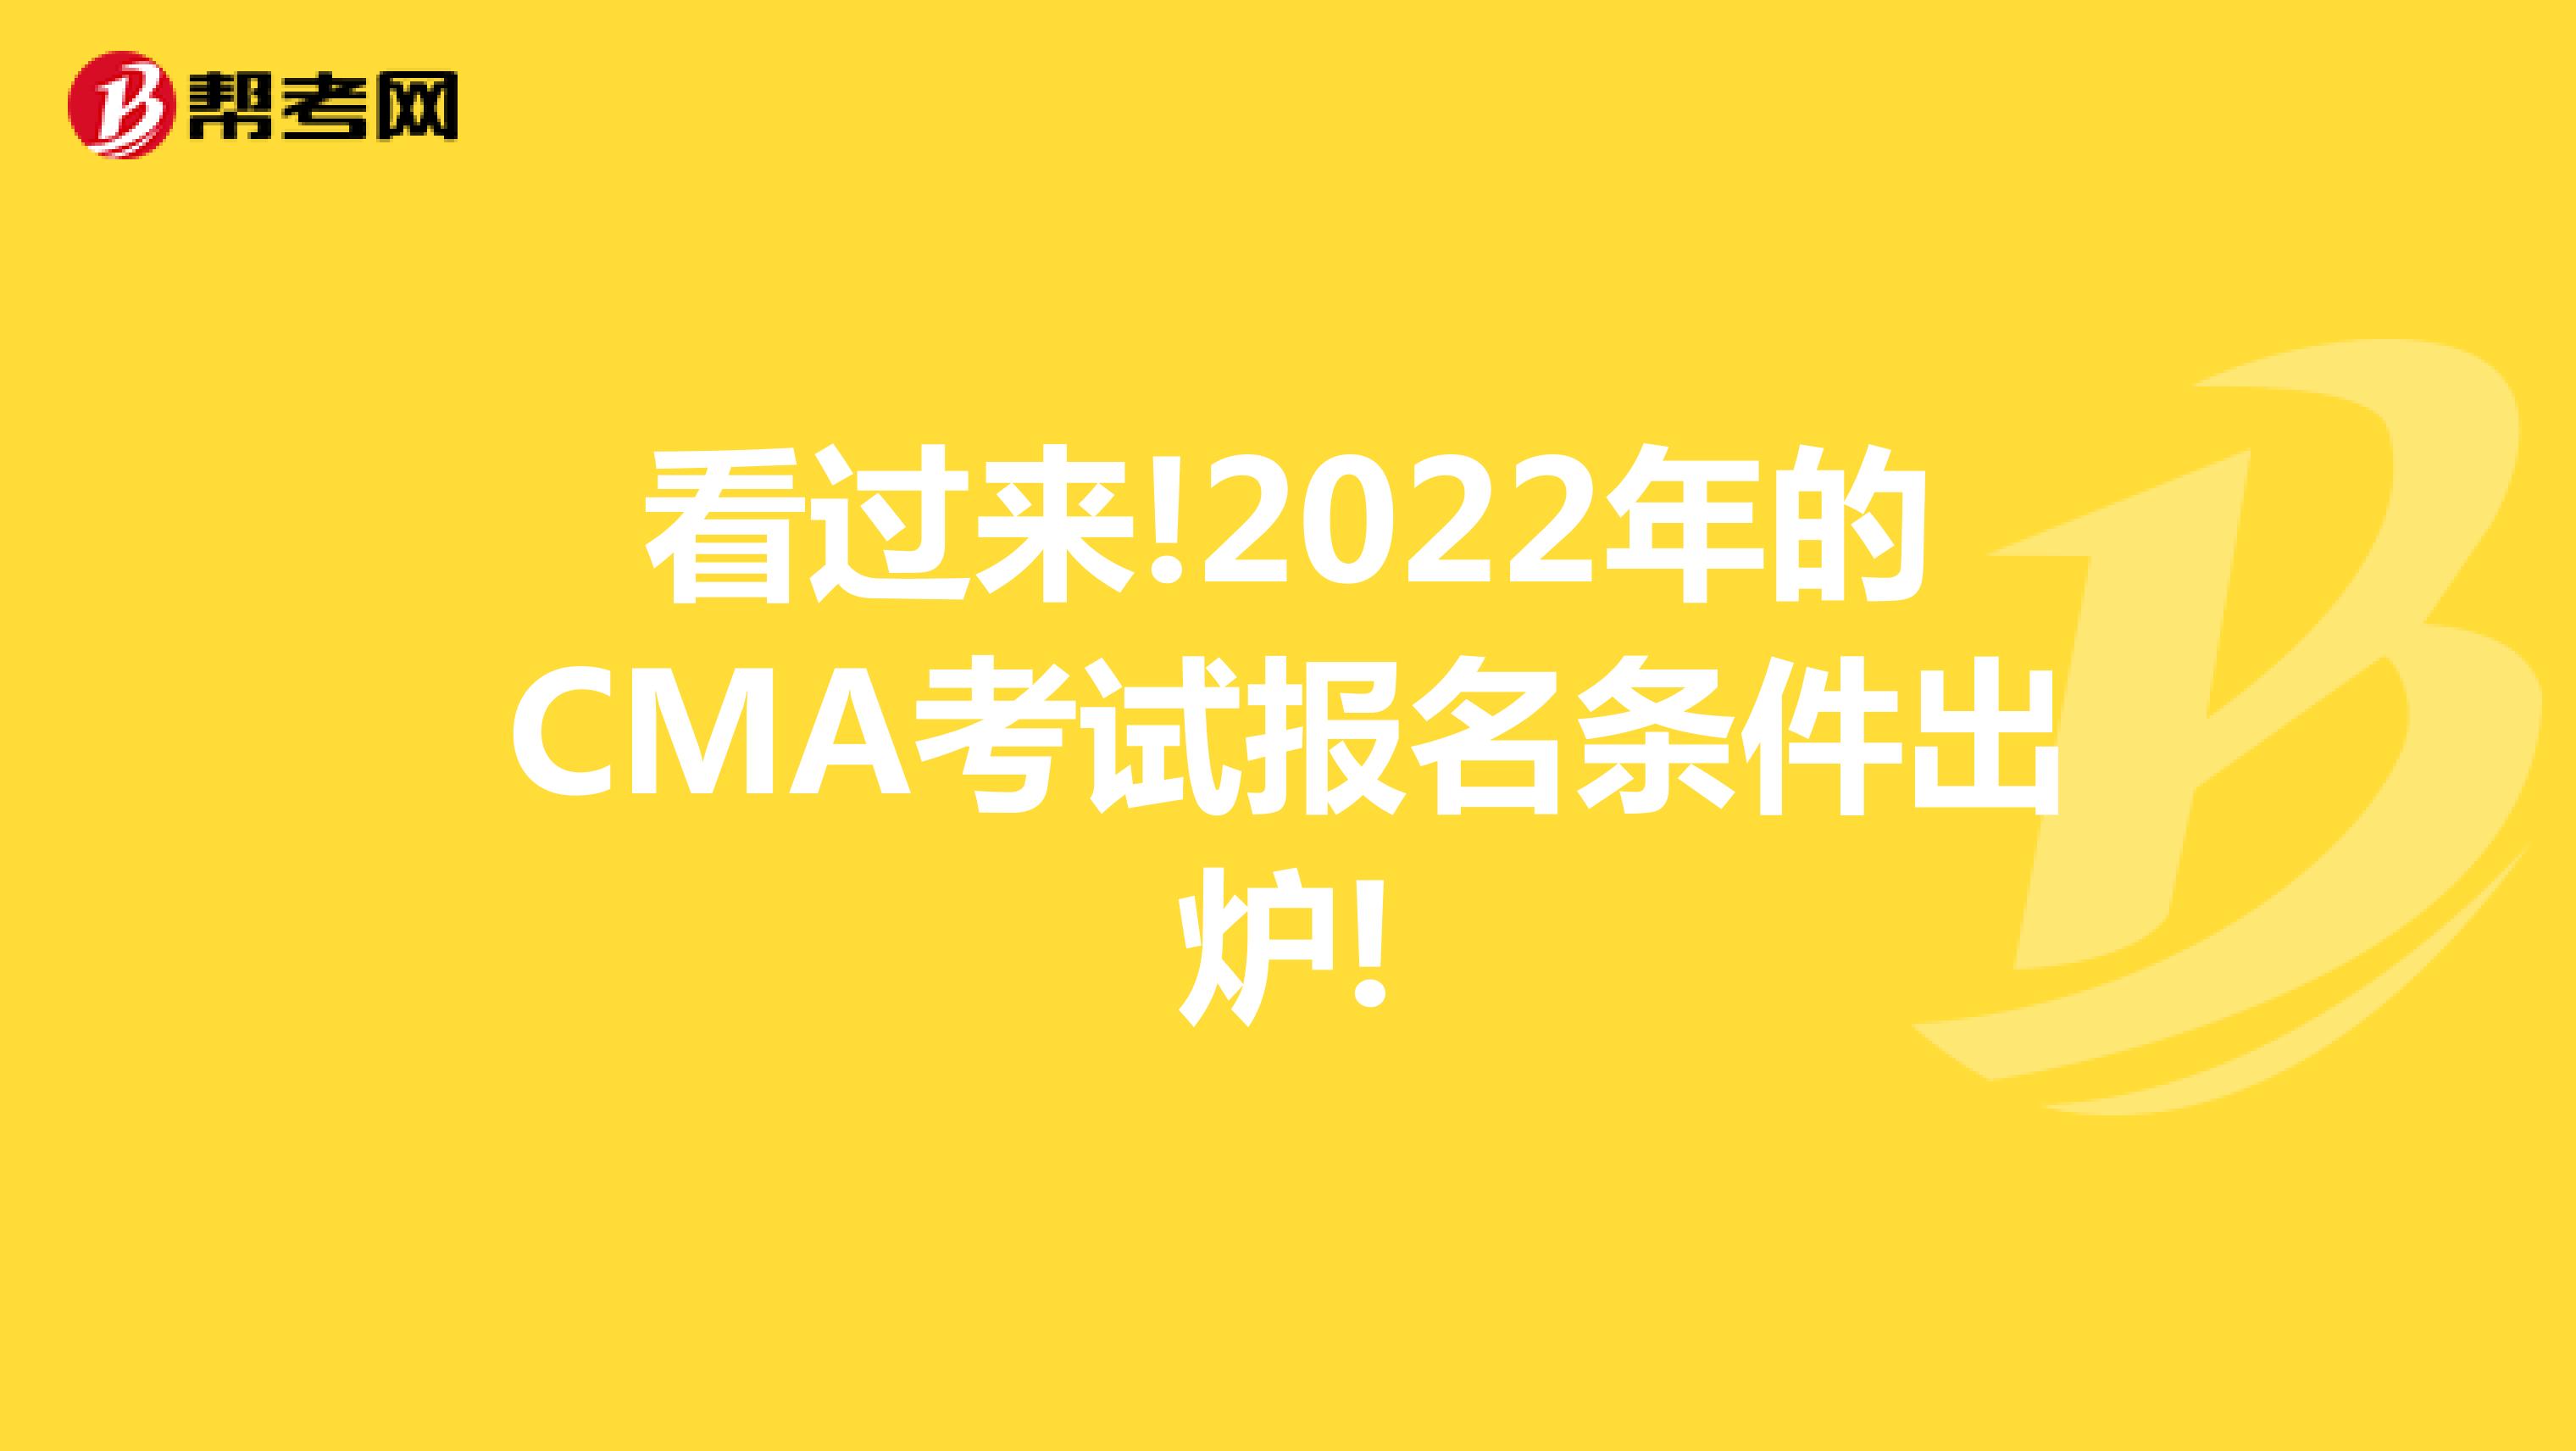 看过来!2022年的CMA考试报名条件出炉!